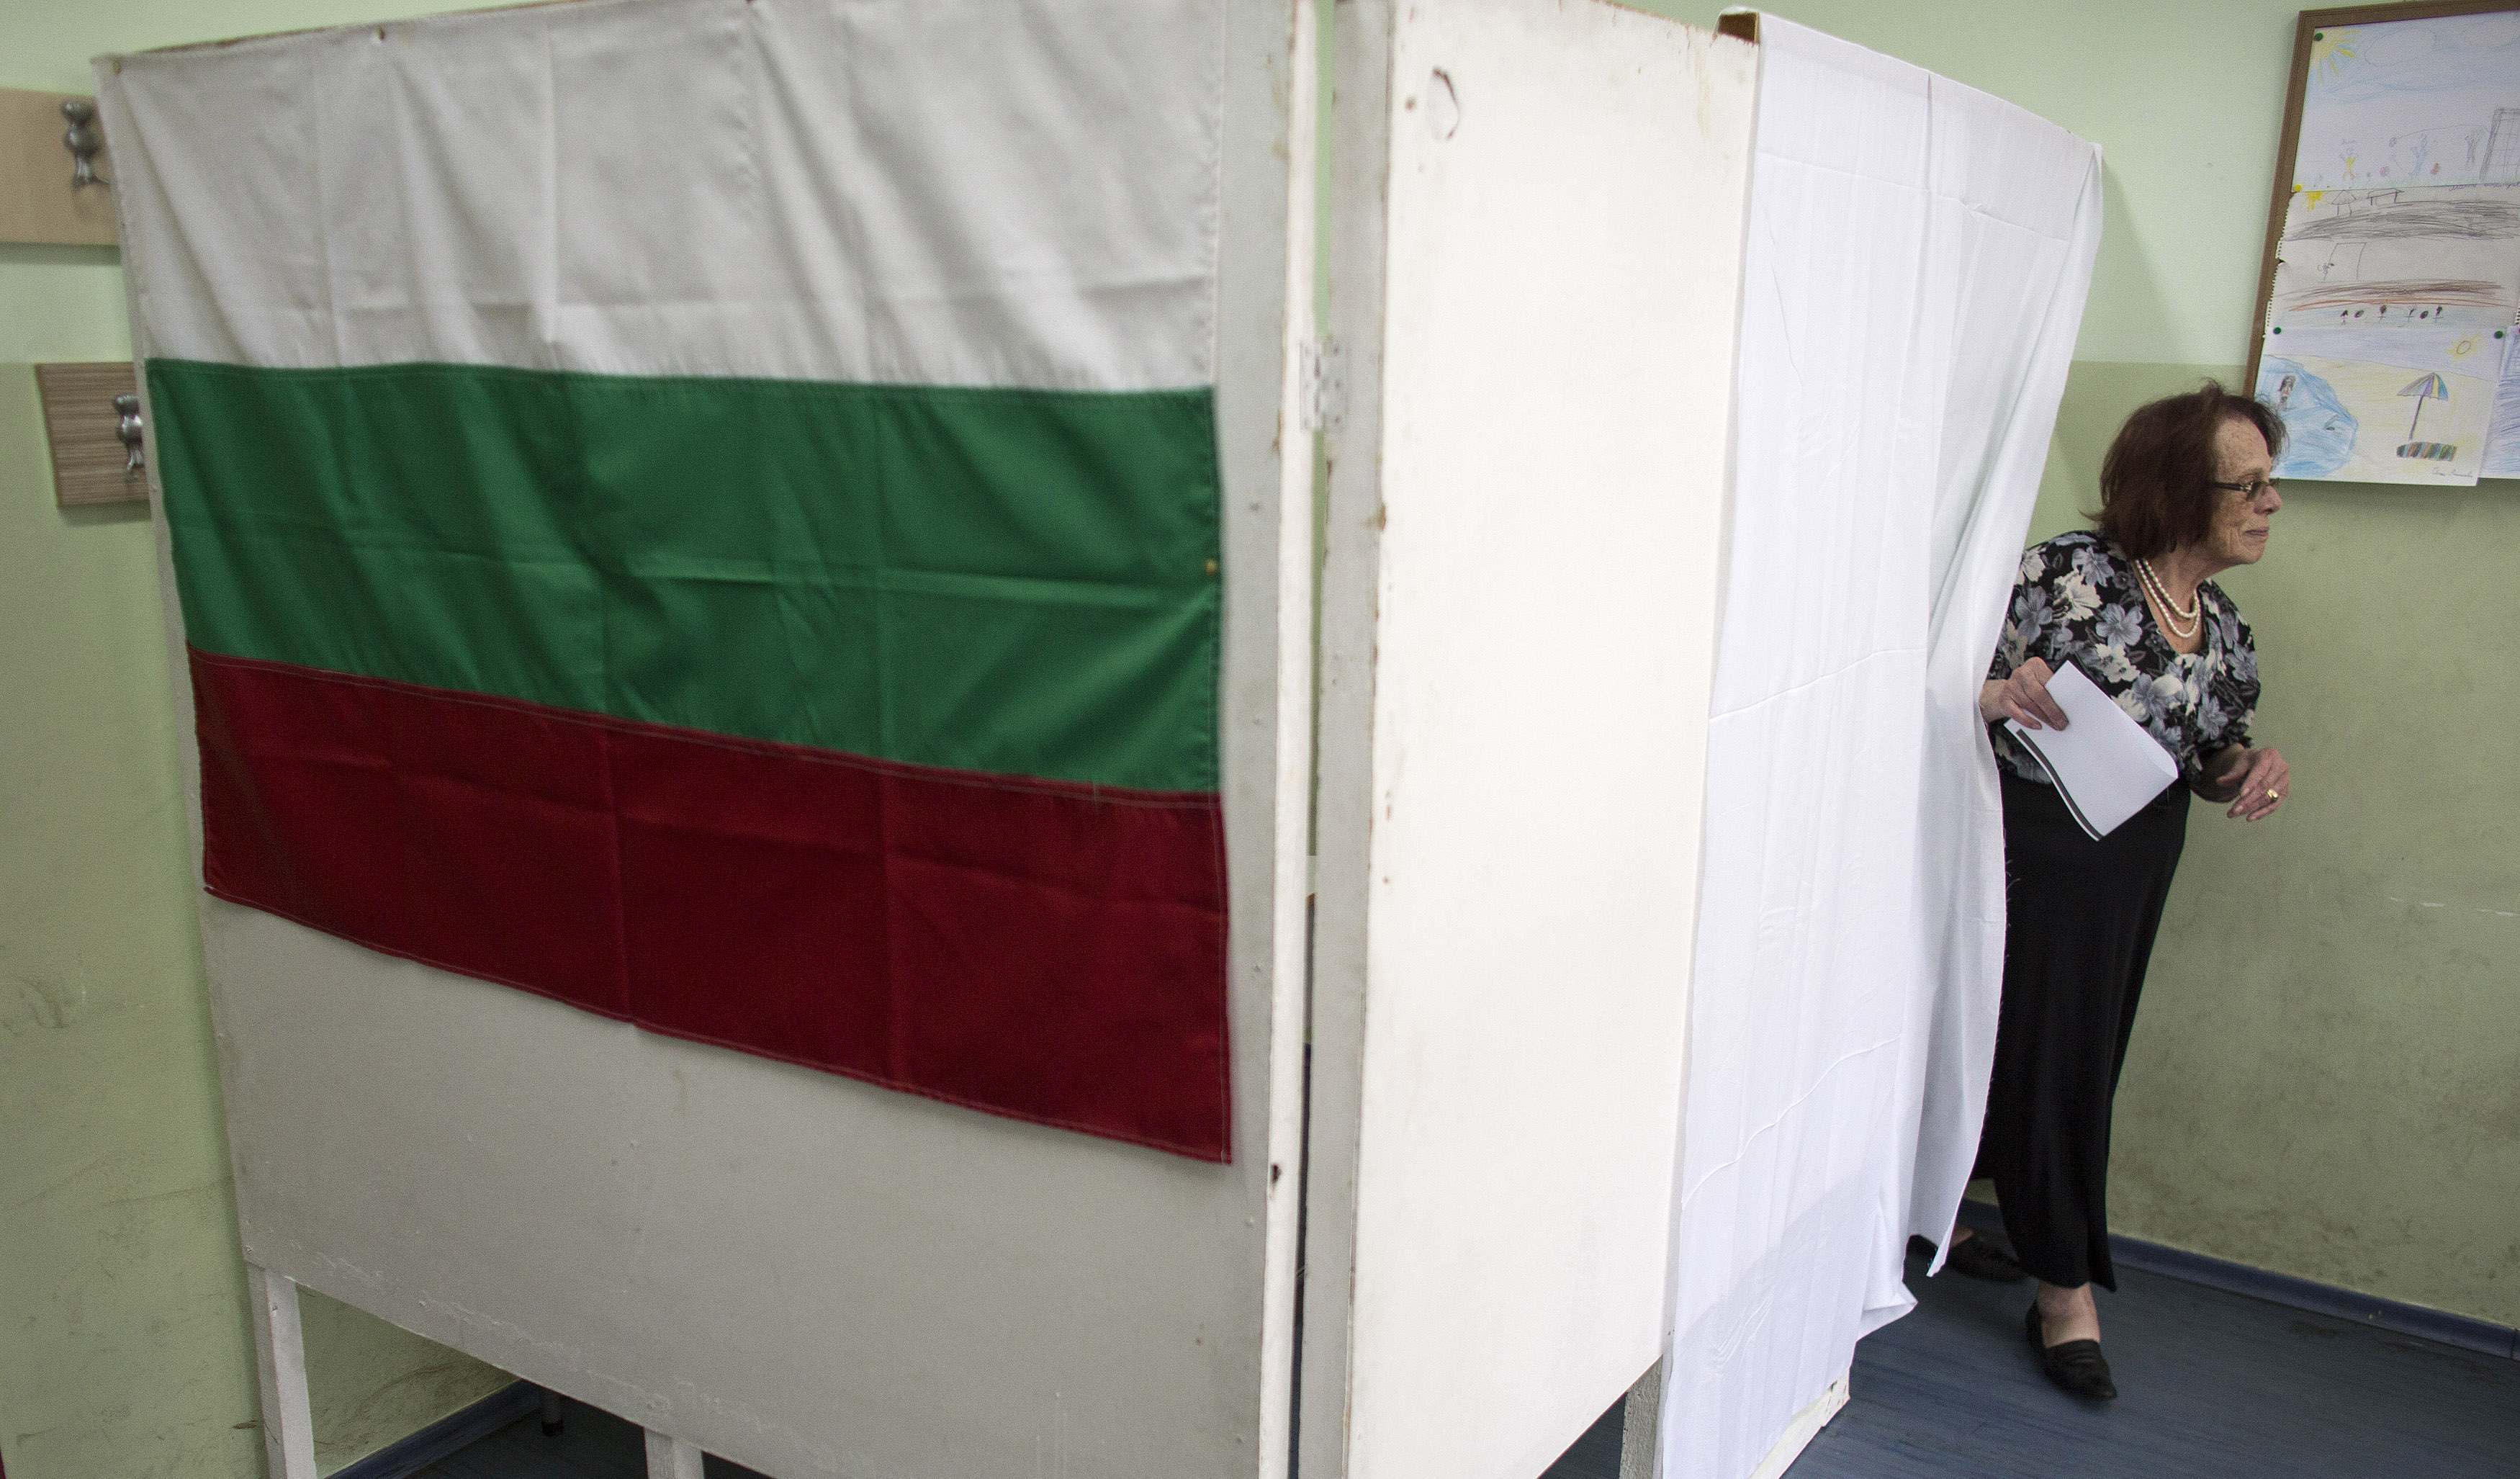 Ευρωεκλογές 2014: Προβάδισμα του GERB της αξιωματικής αντιπολίτευσης στη Βουλγαρία, δίνουν τα exit polls